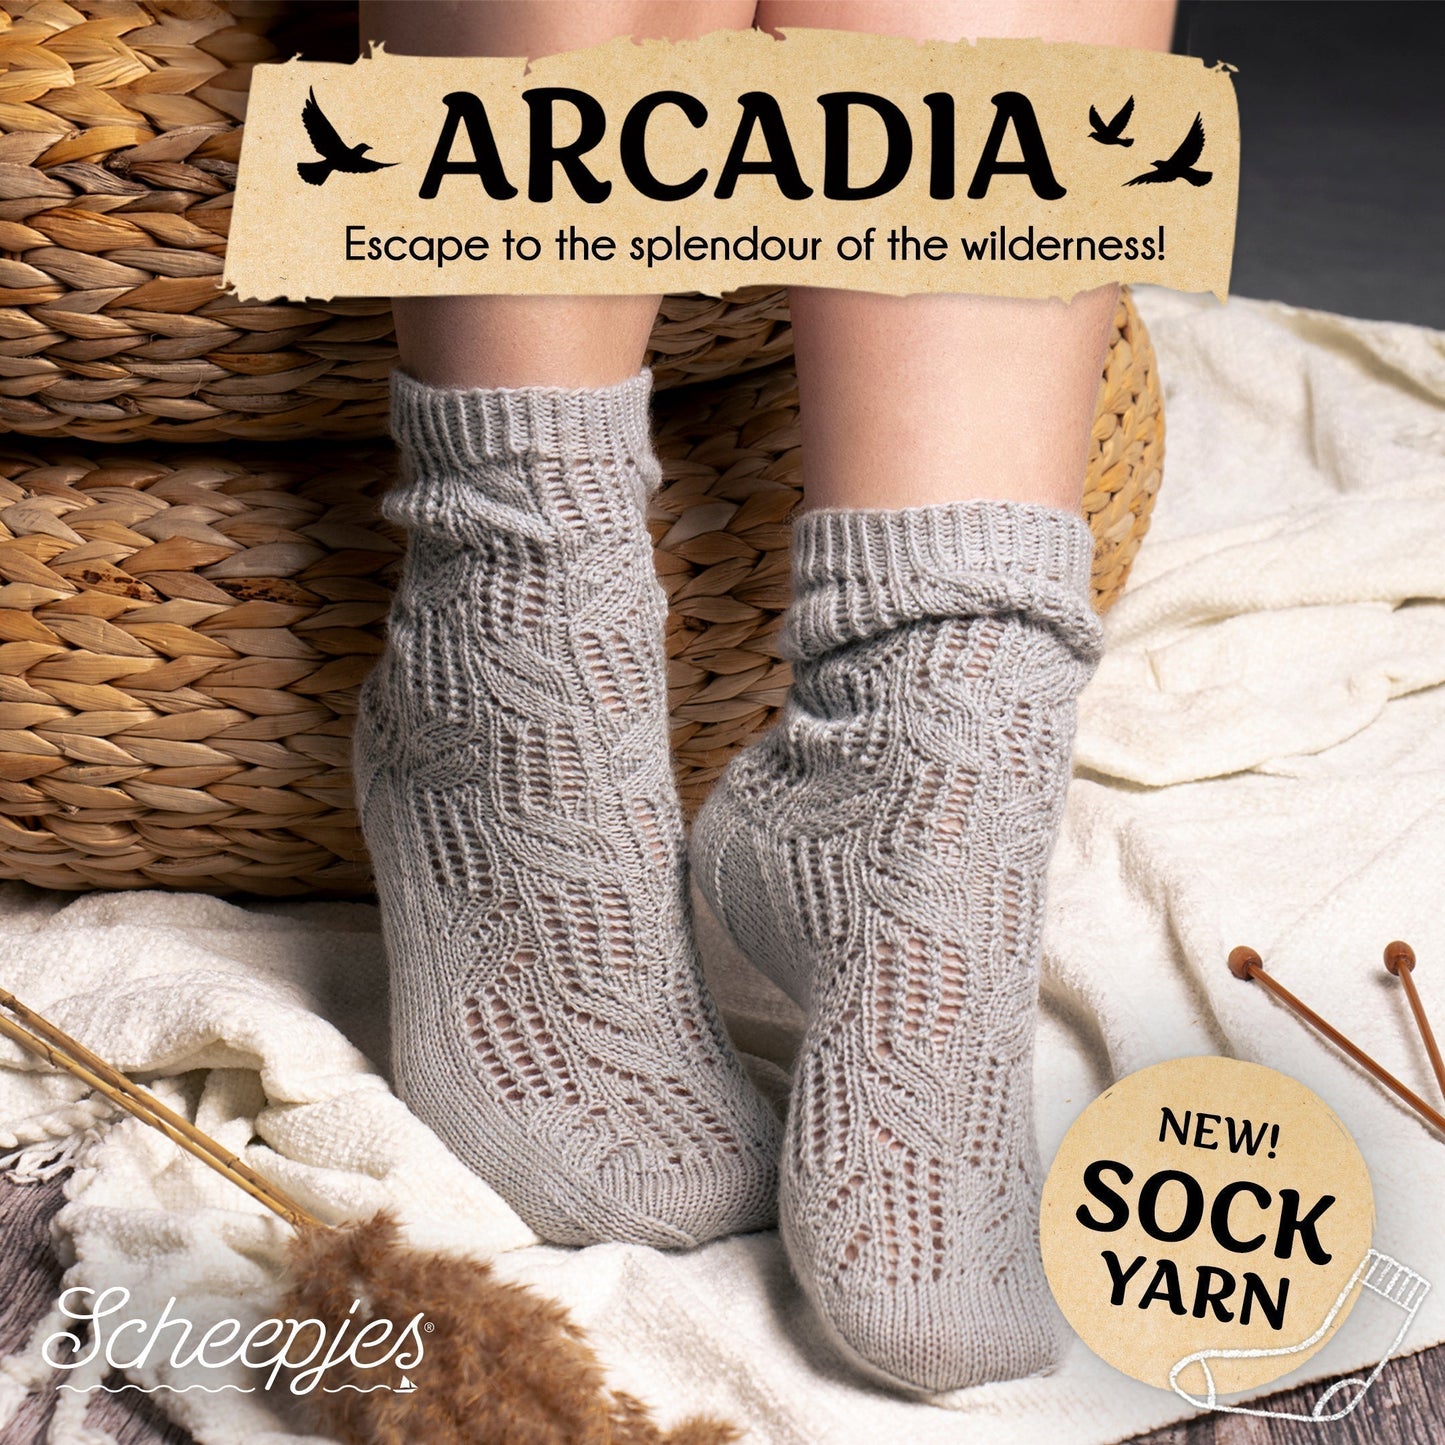 Scheepjes Arcadia - 904 Sakura